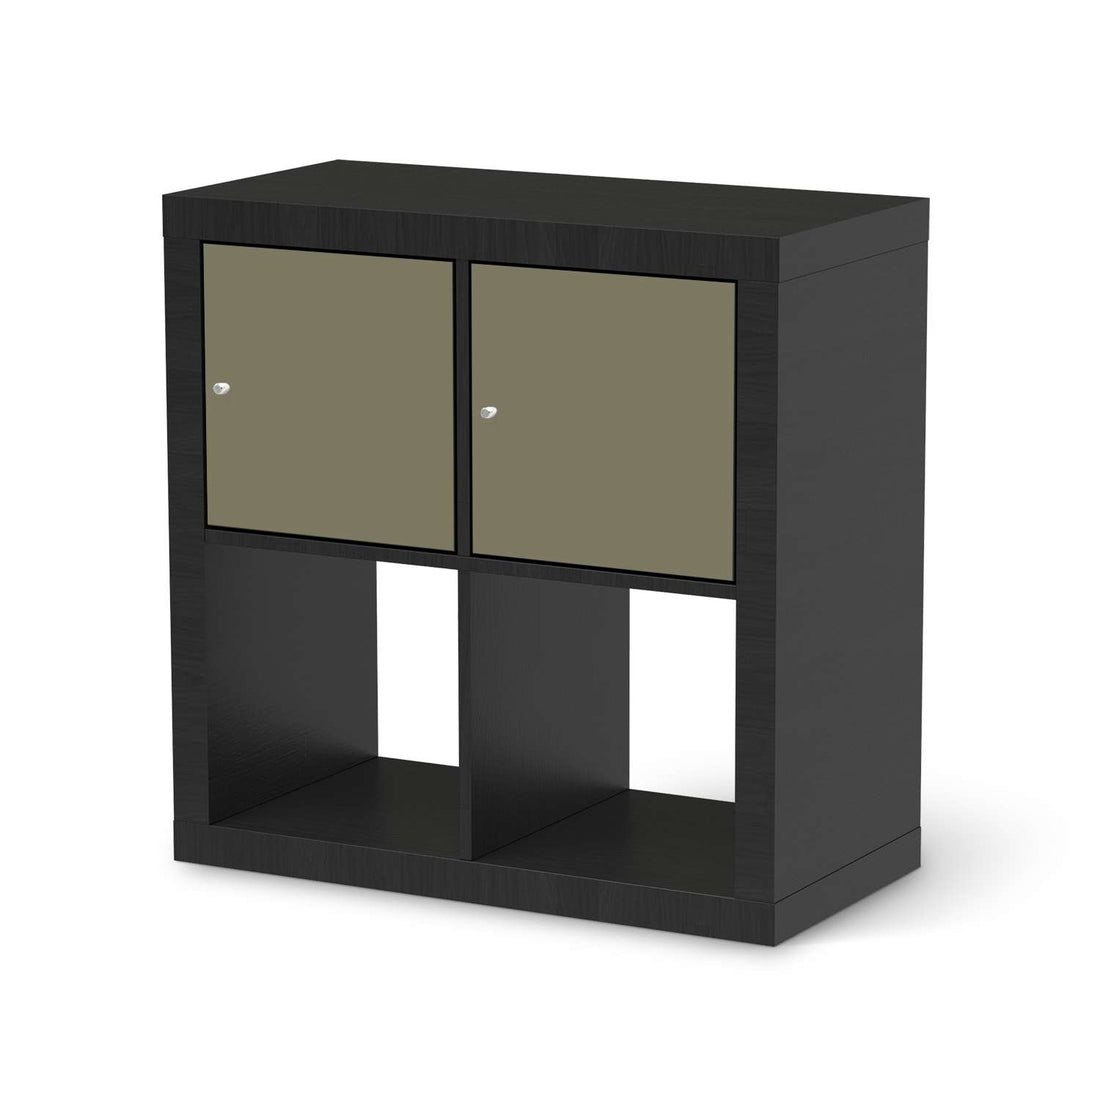 Möbelfolie Braungrau Light - IKEA Kallax Regal 2 Türen Quer - schwarz